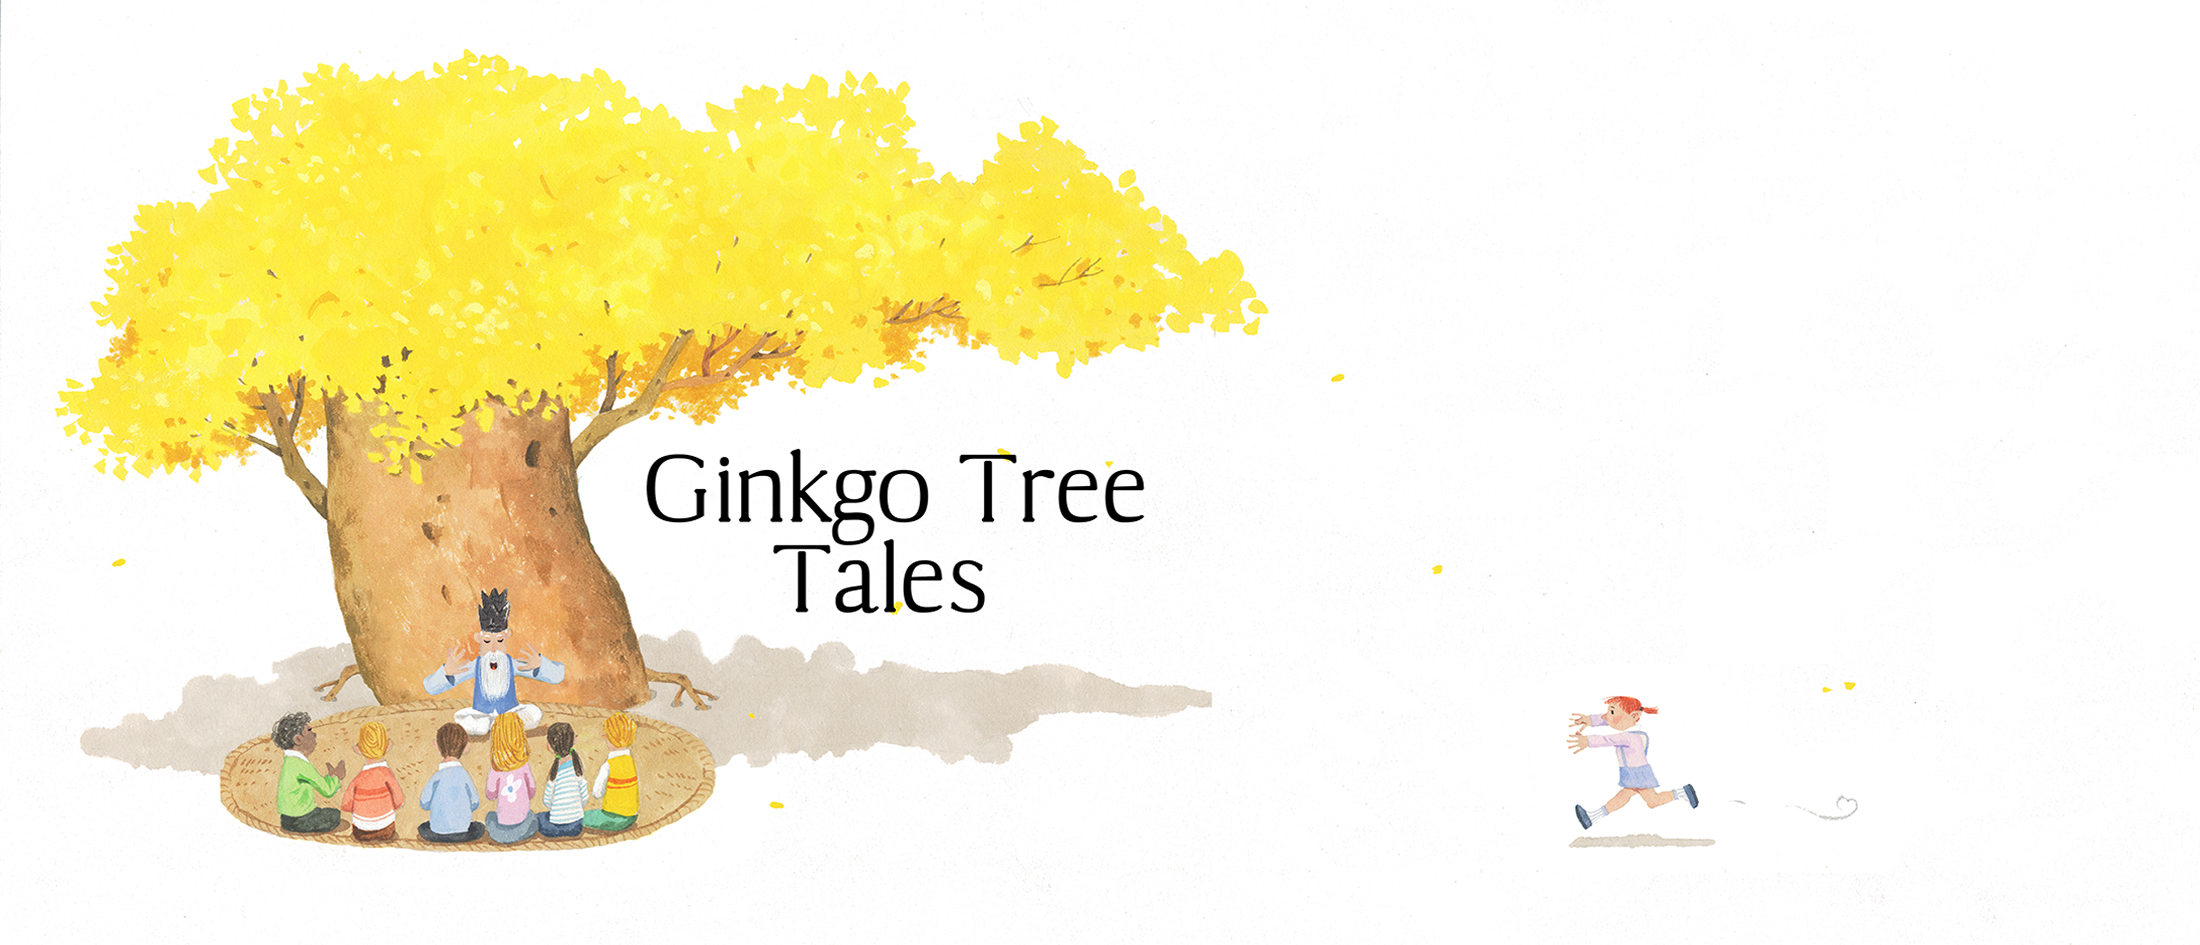 Ginkgo Tree Tales